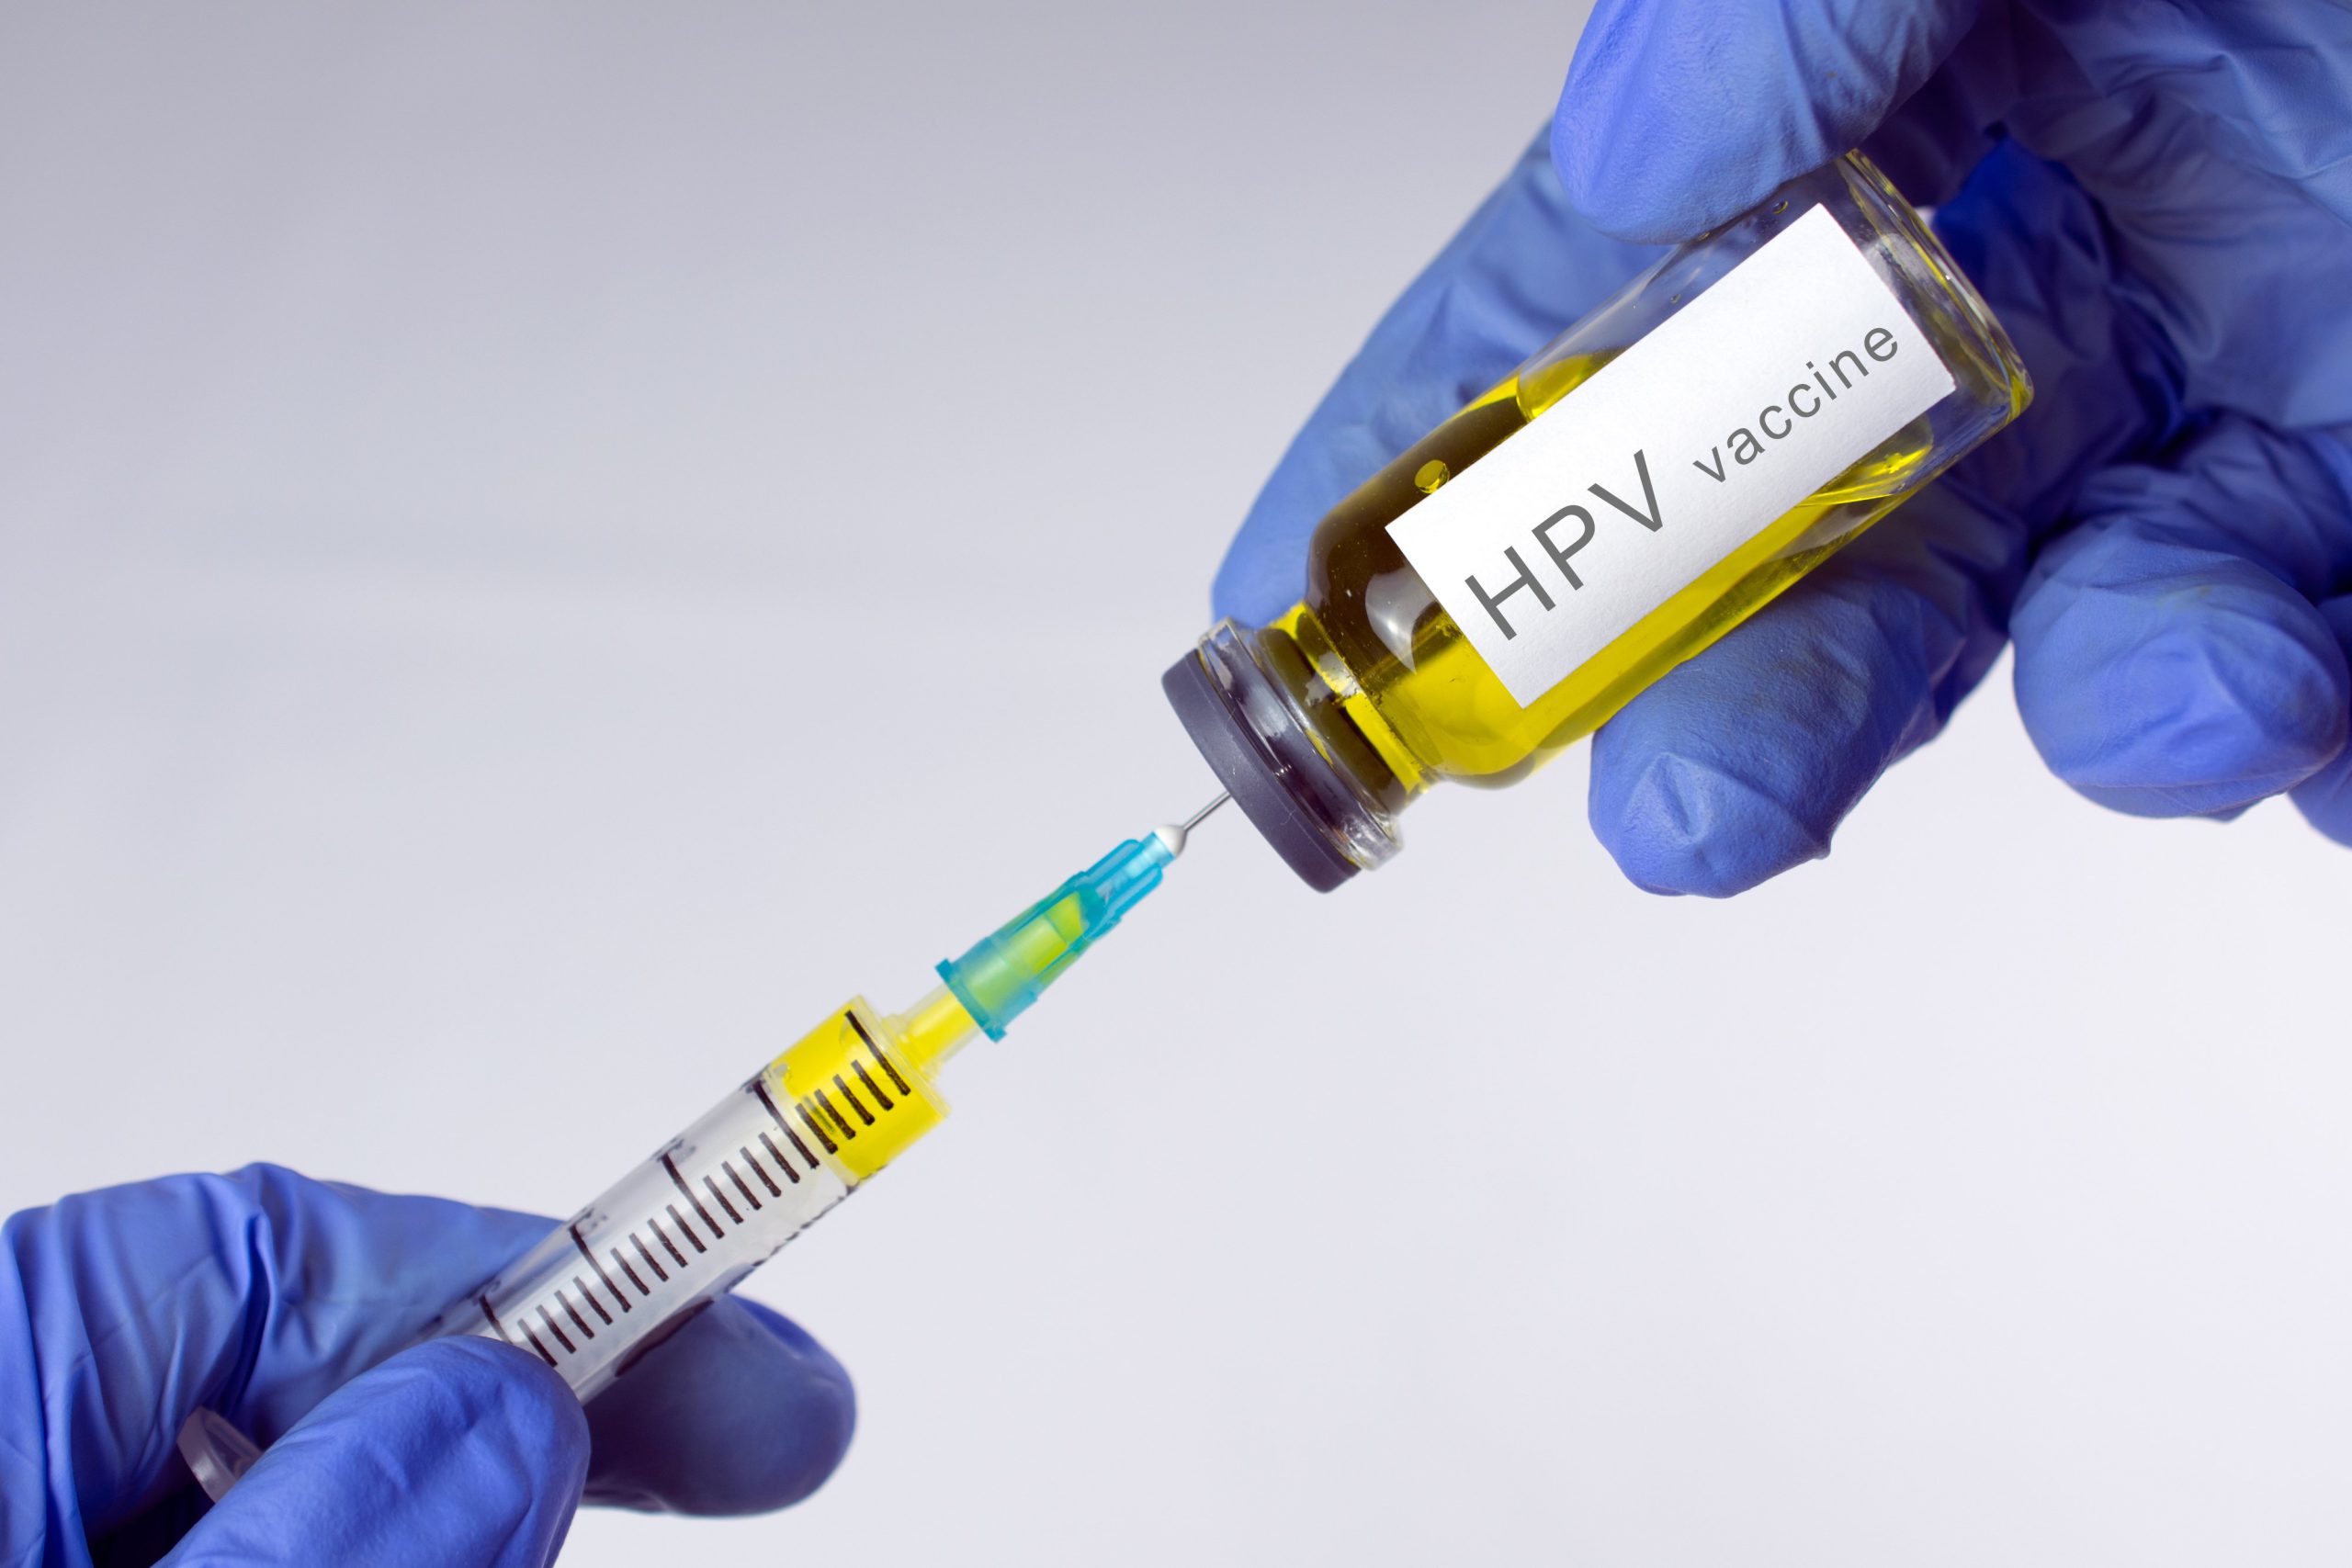  Medic pediatru, despre reacţia părinţilor faţă de vaccinul HPV: Îmi pare că receptivitatea e foarte mare